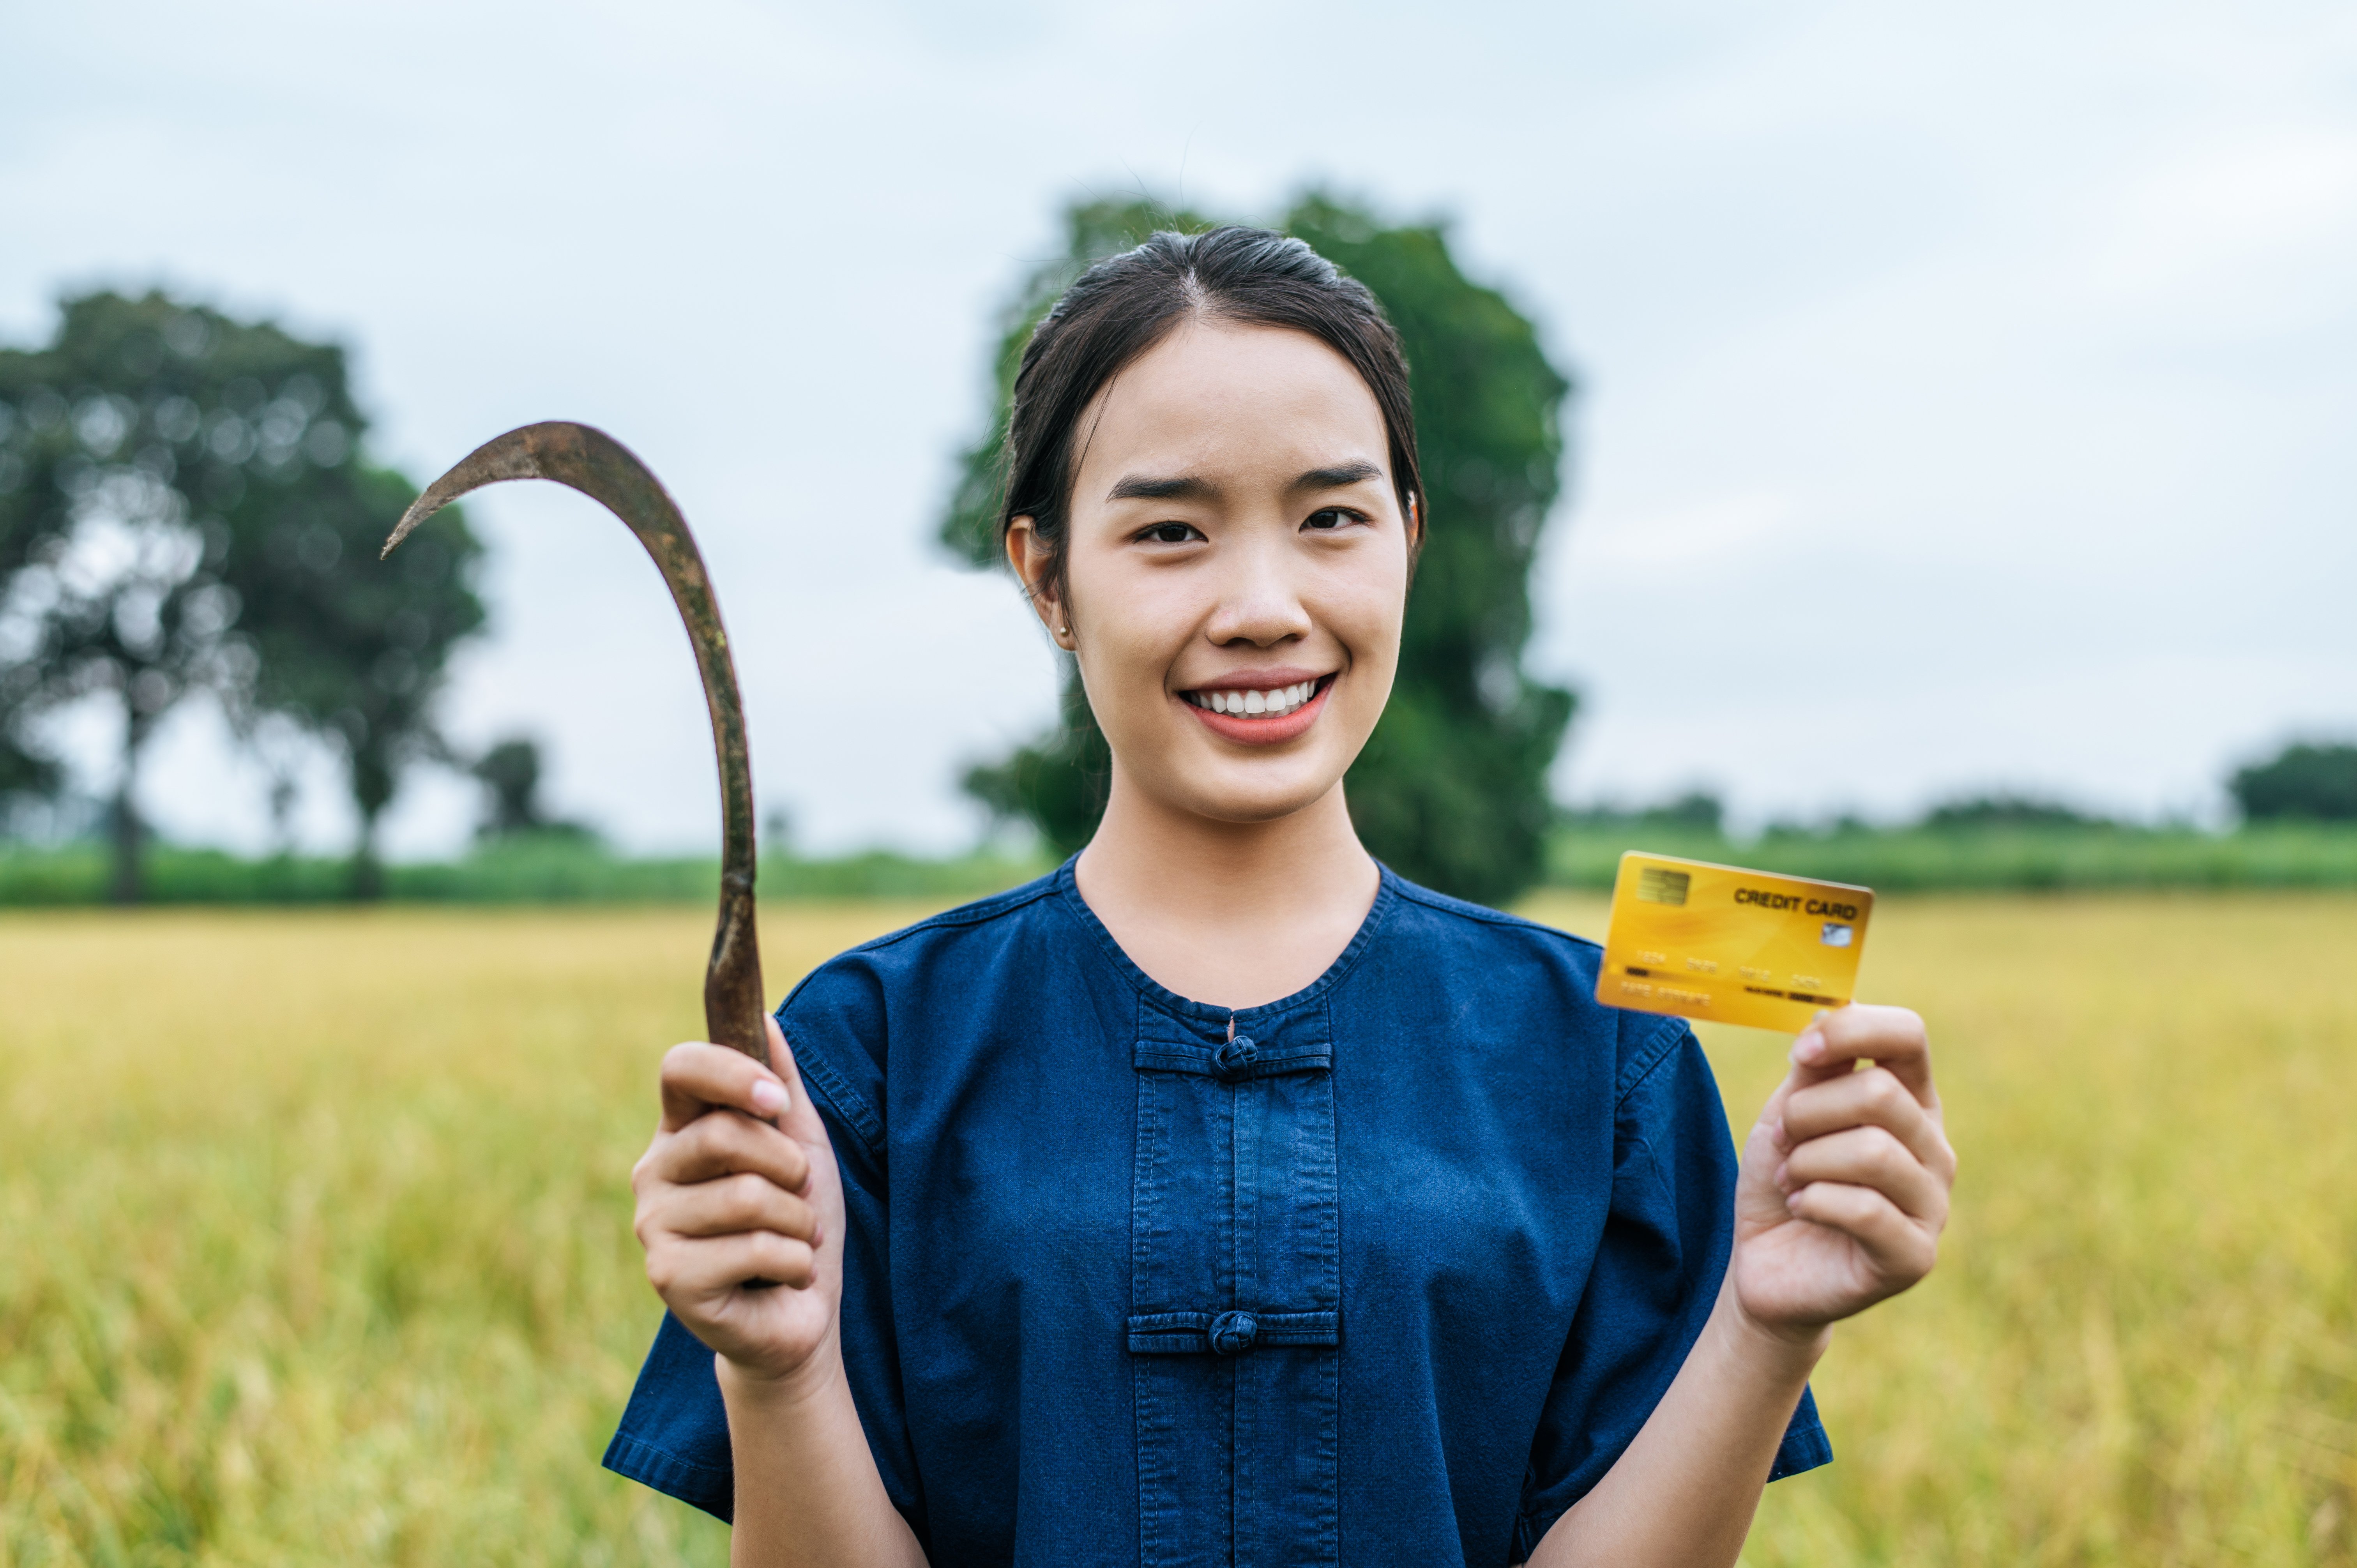 Mulher asiática segurando uma foice em uma mão e um cartão de crédito em outra mão, ela está sorrindo e usando uma roupa azul, ao fundo, uma plantação de soja e uma árvore.